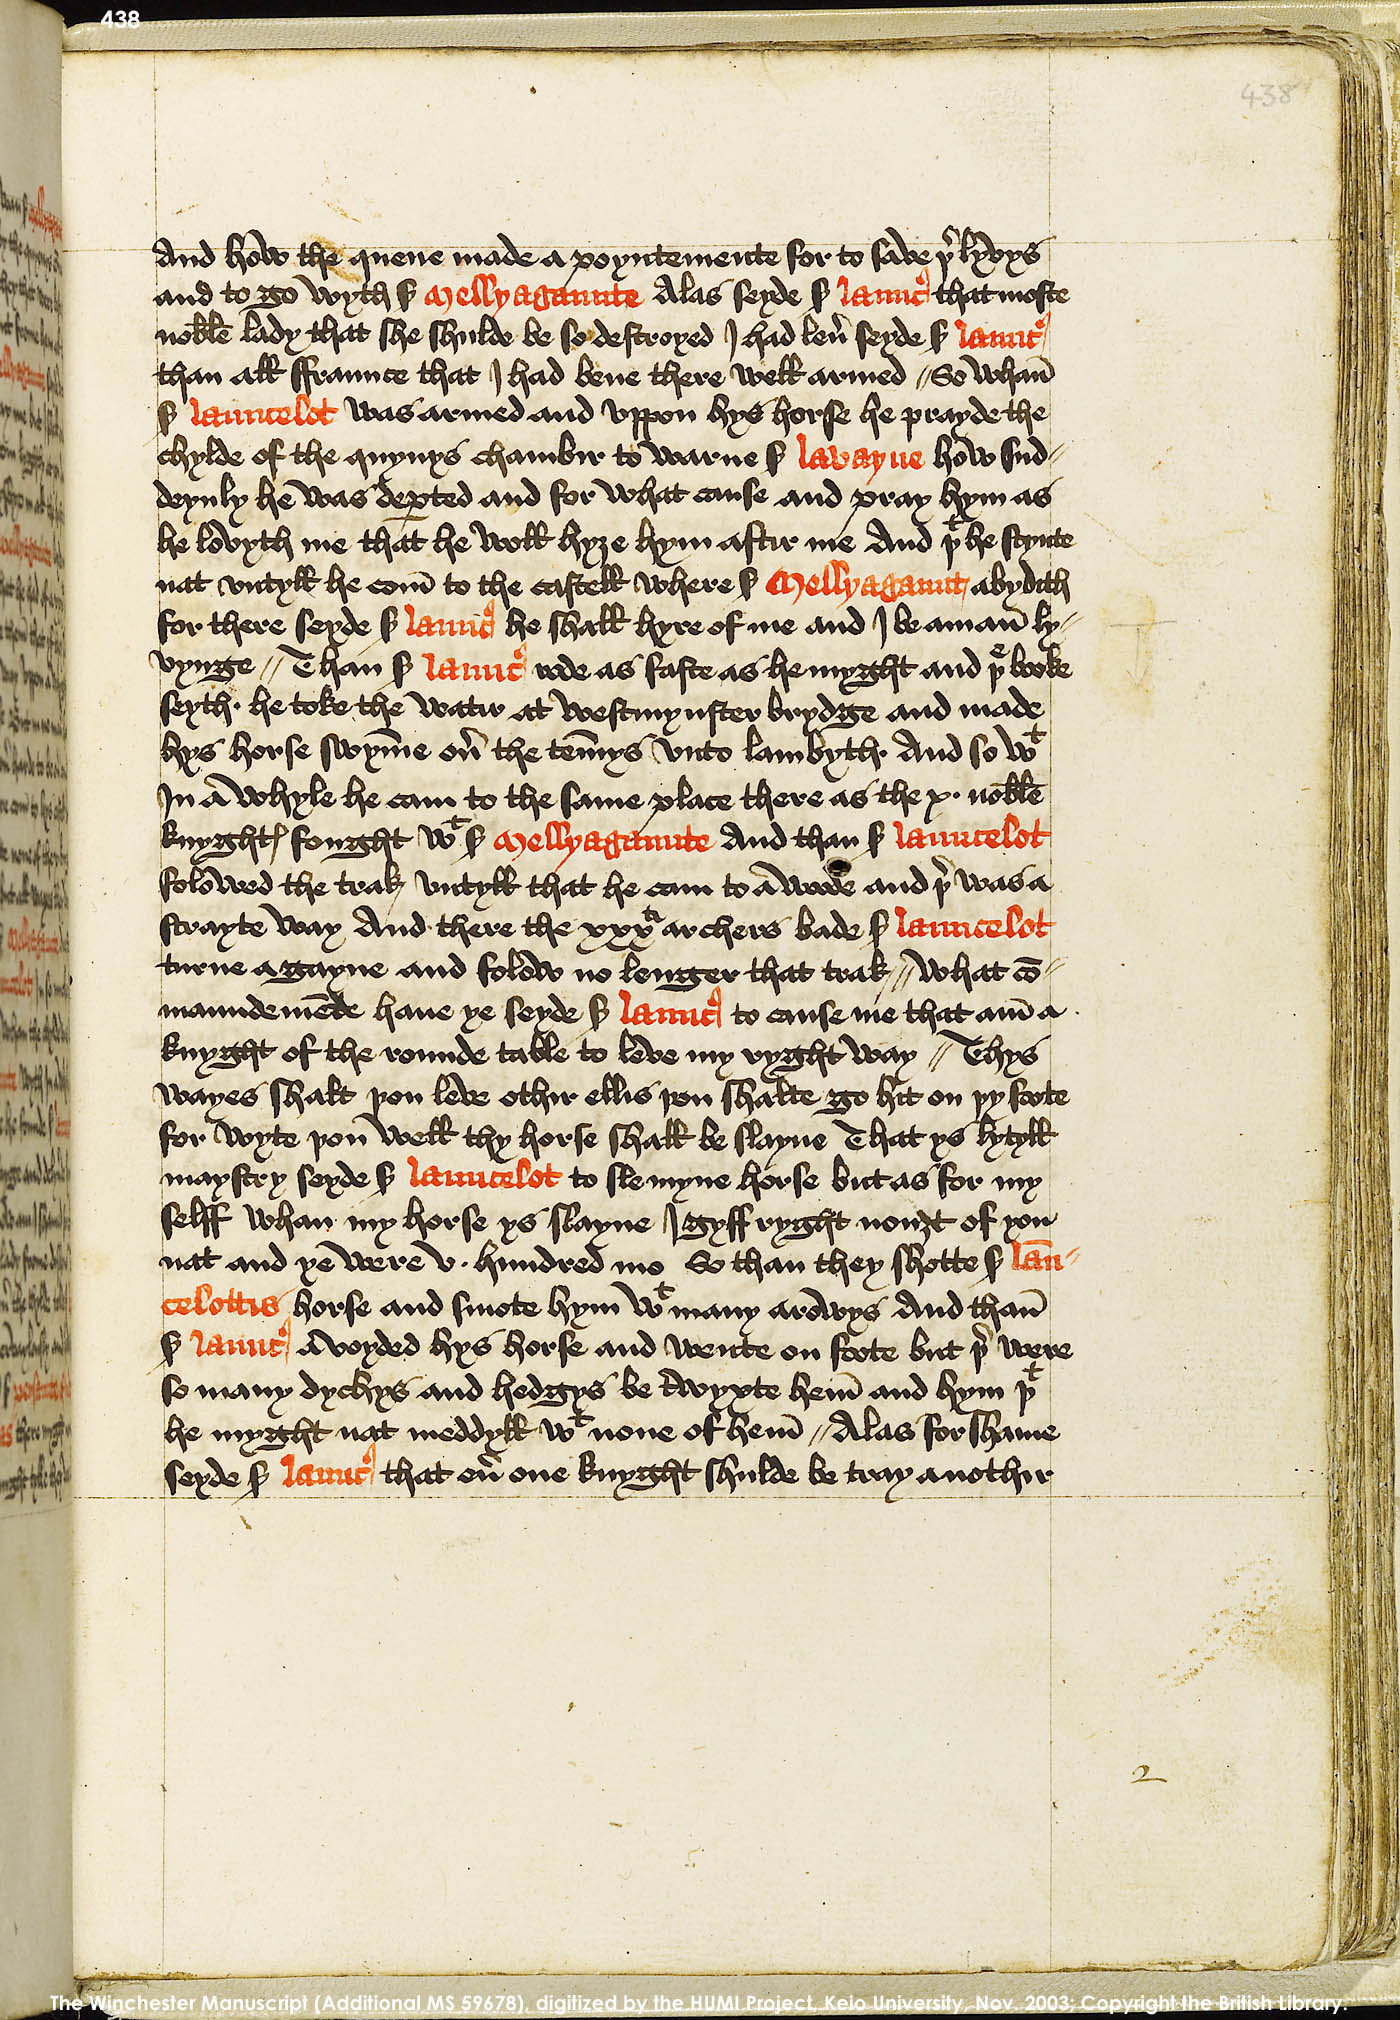 Folio 438r